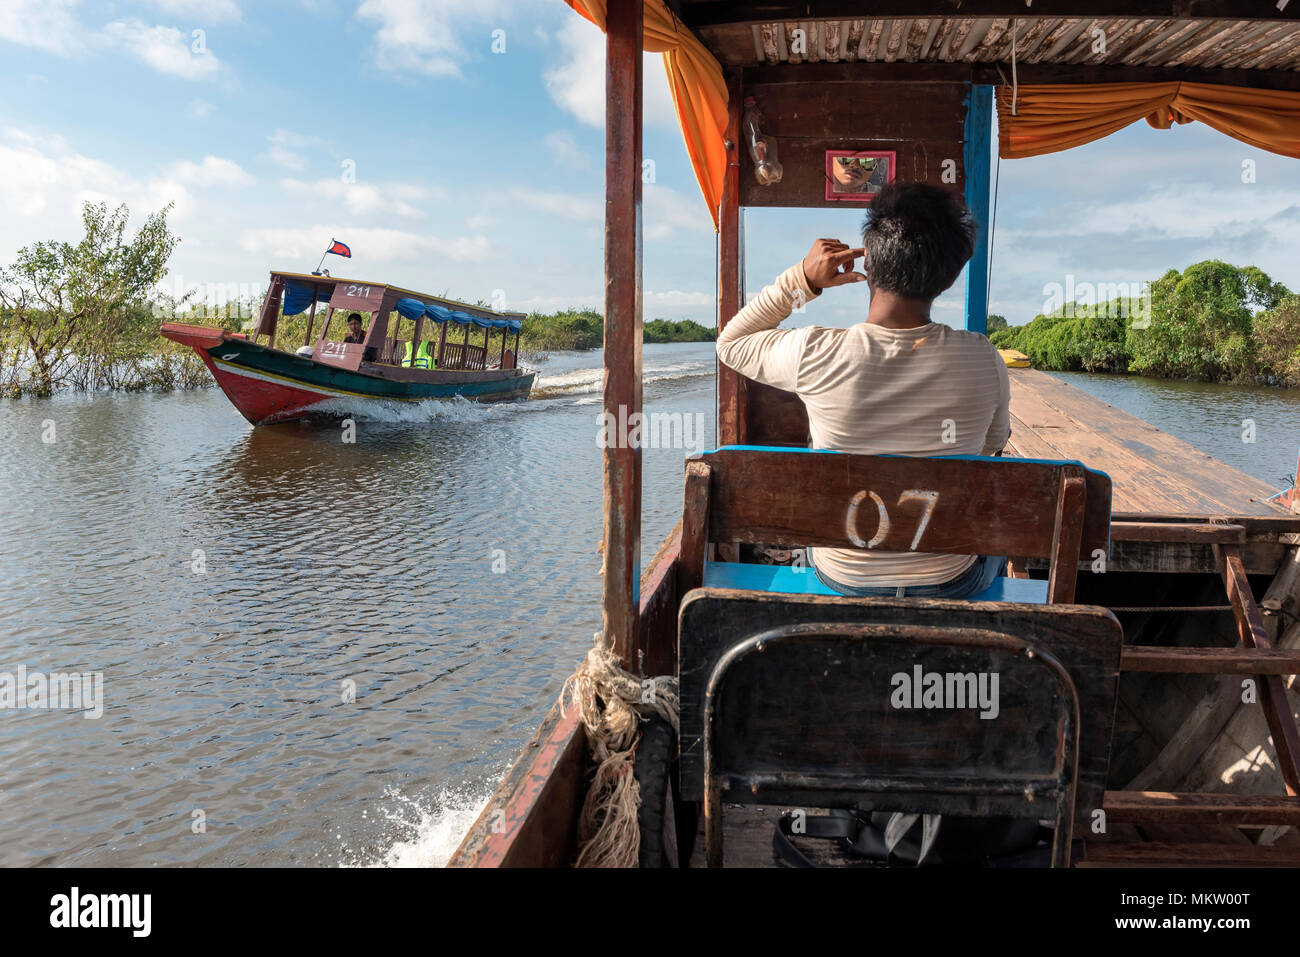 Bateaux de tourisme dans le village flottant KOMPONG PHLUK, lac Tonle Sap, Cambodge Banque D'Images